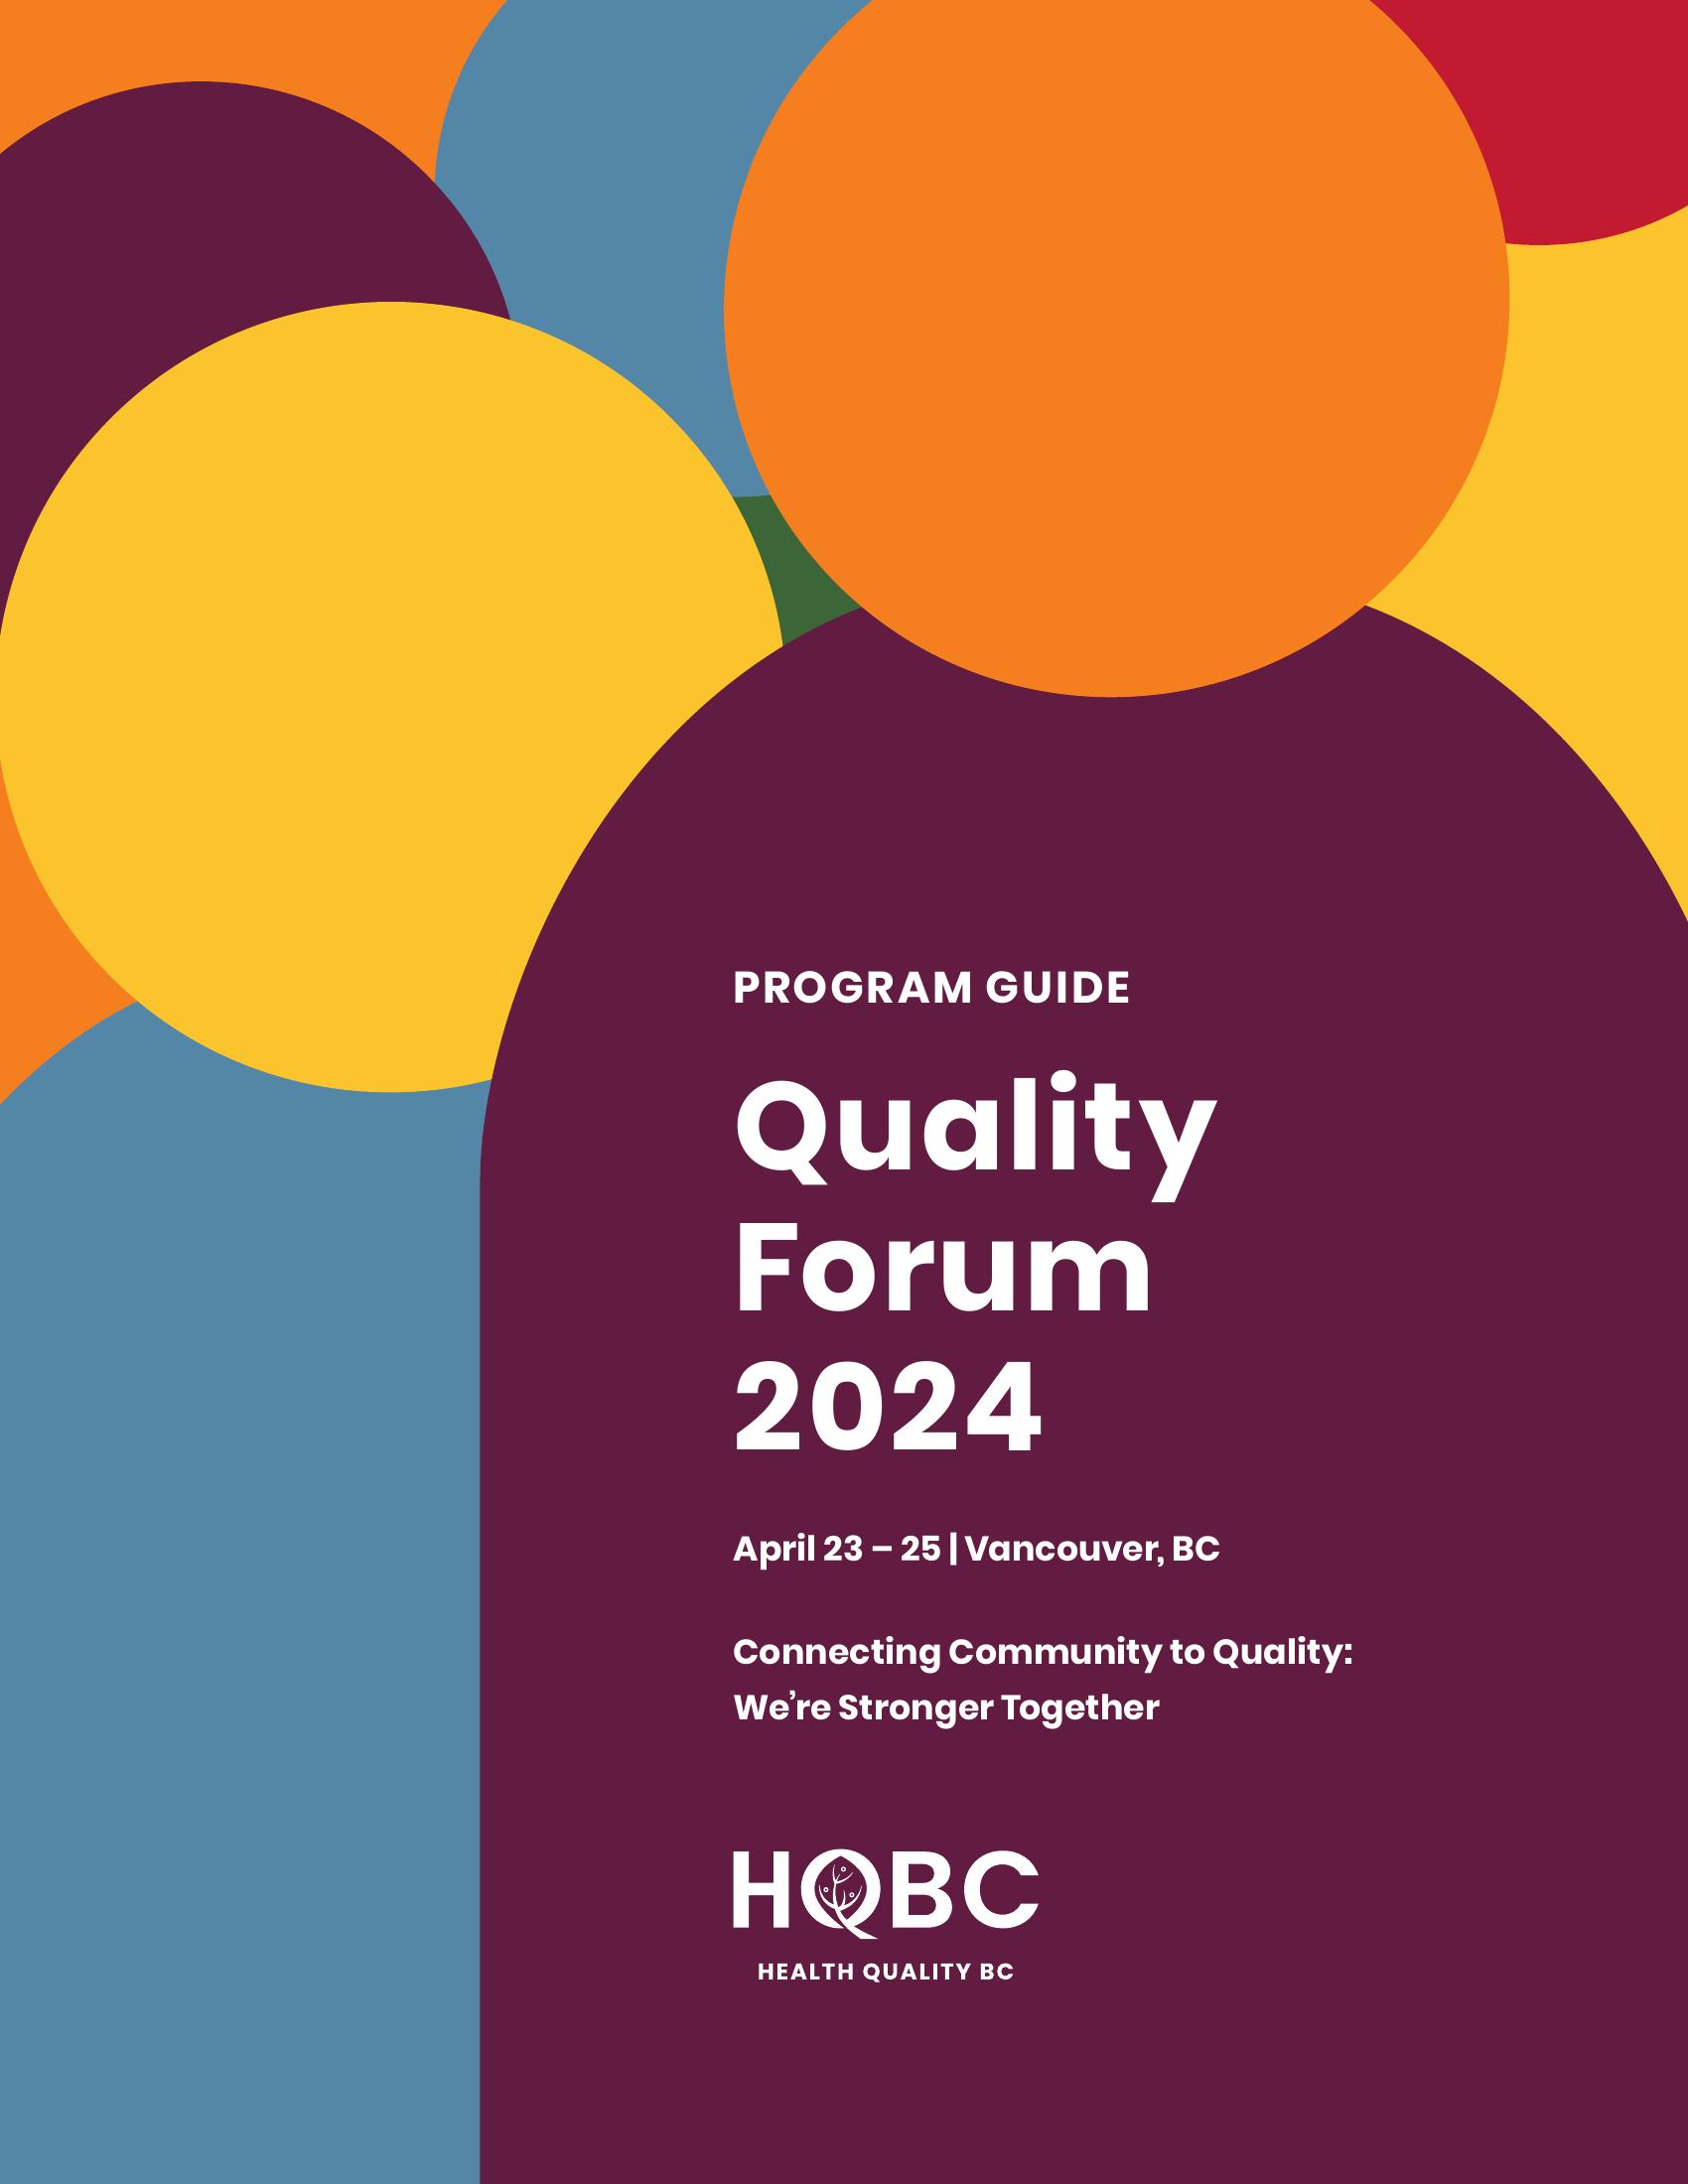 Quality Forum 2024 Program Guide Cover